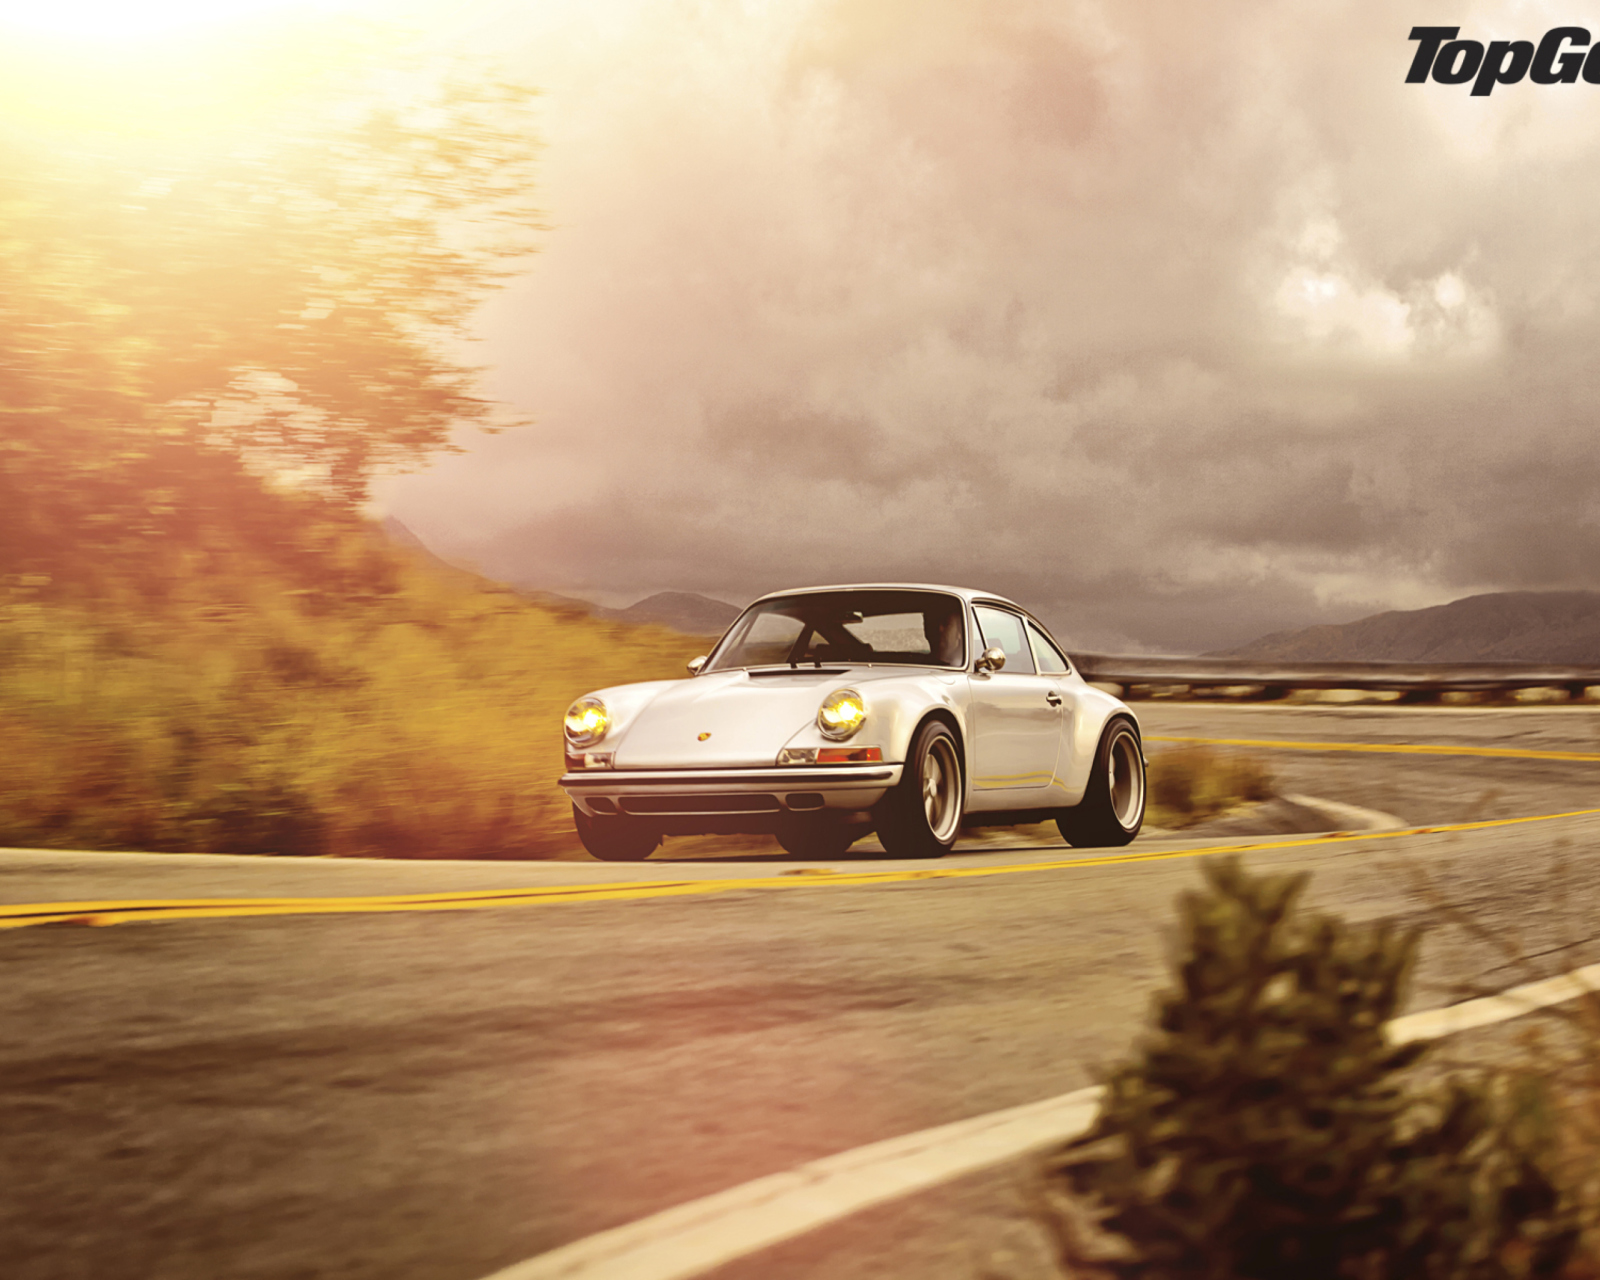 Fondo de pantalla Porsche 911 1600x1280